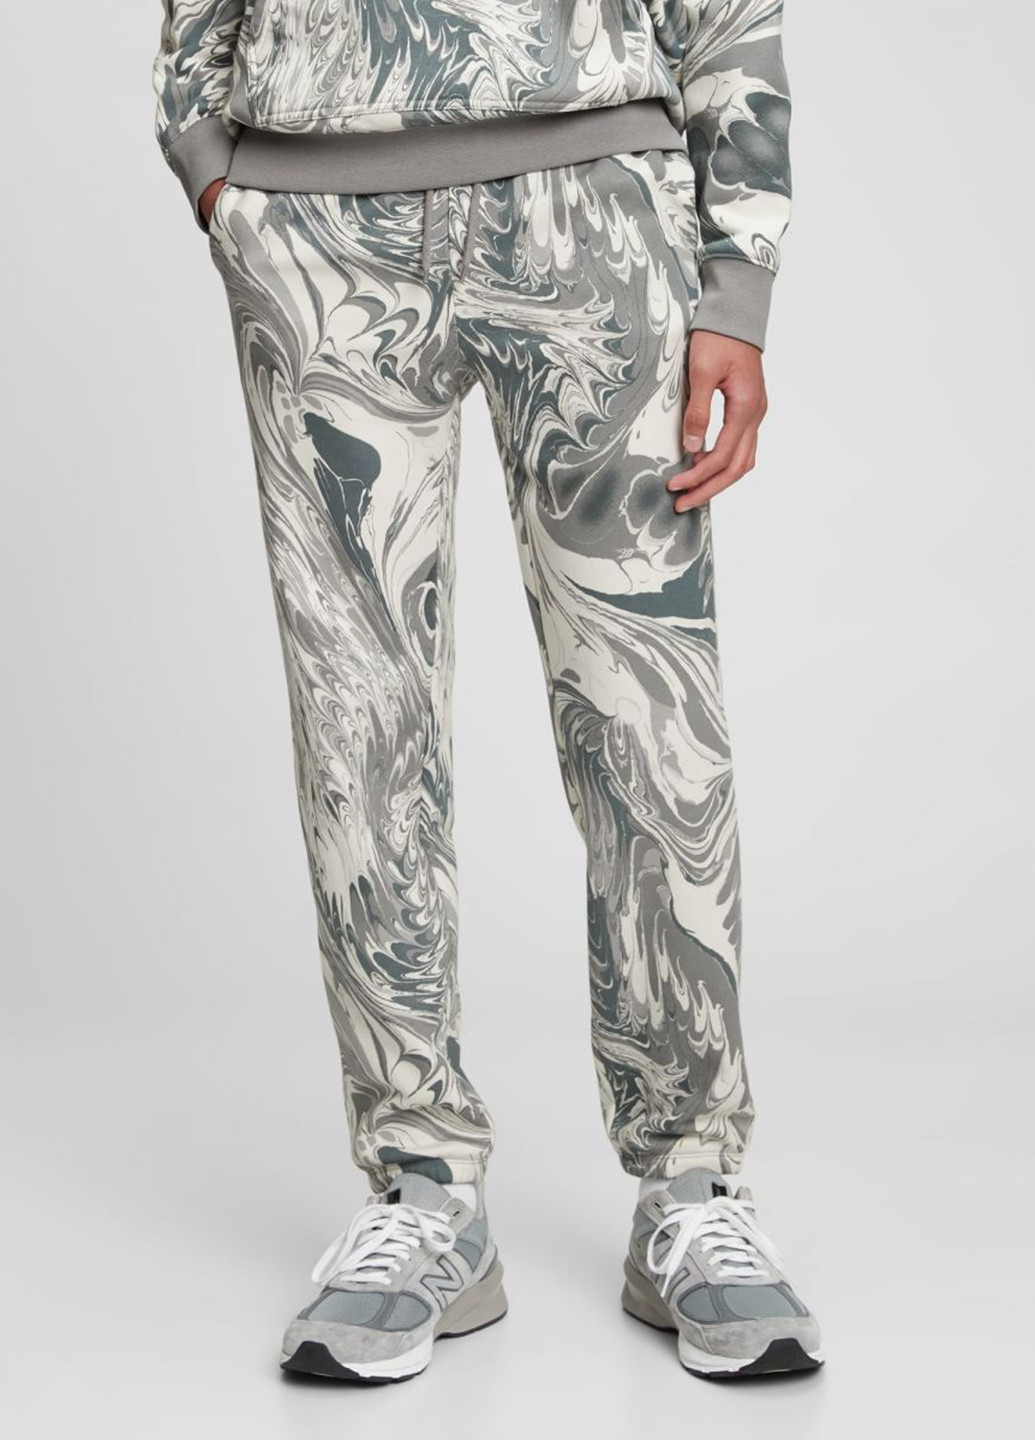 Костюм (худи, брюки) Gap абстрактный серый спортивный хлопок, трикотаж